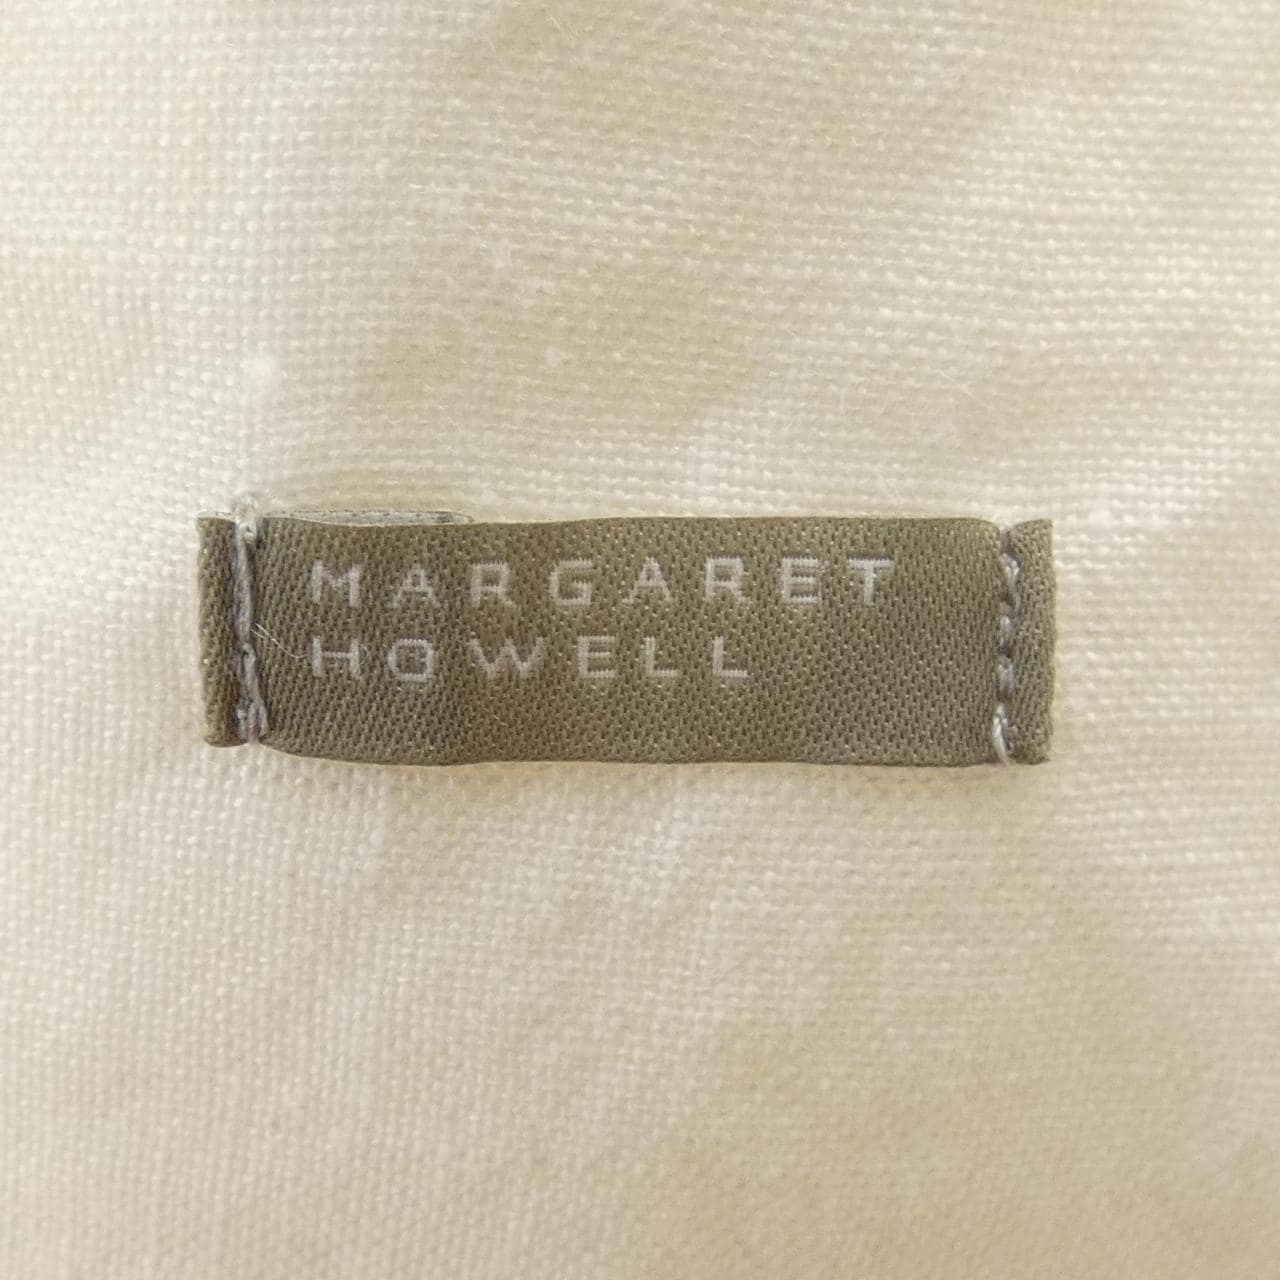 玛格丽特Howell Margaret Howell连衣裙